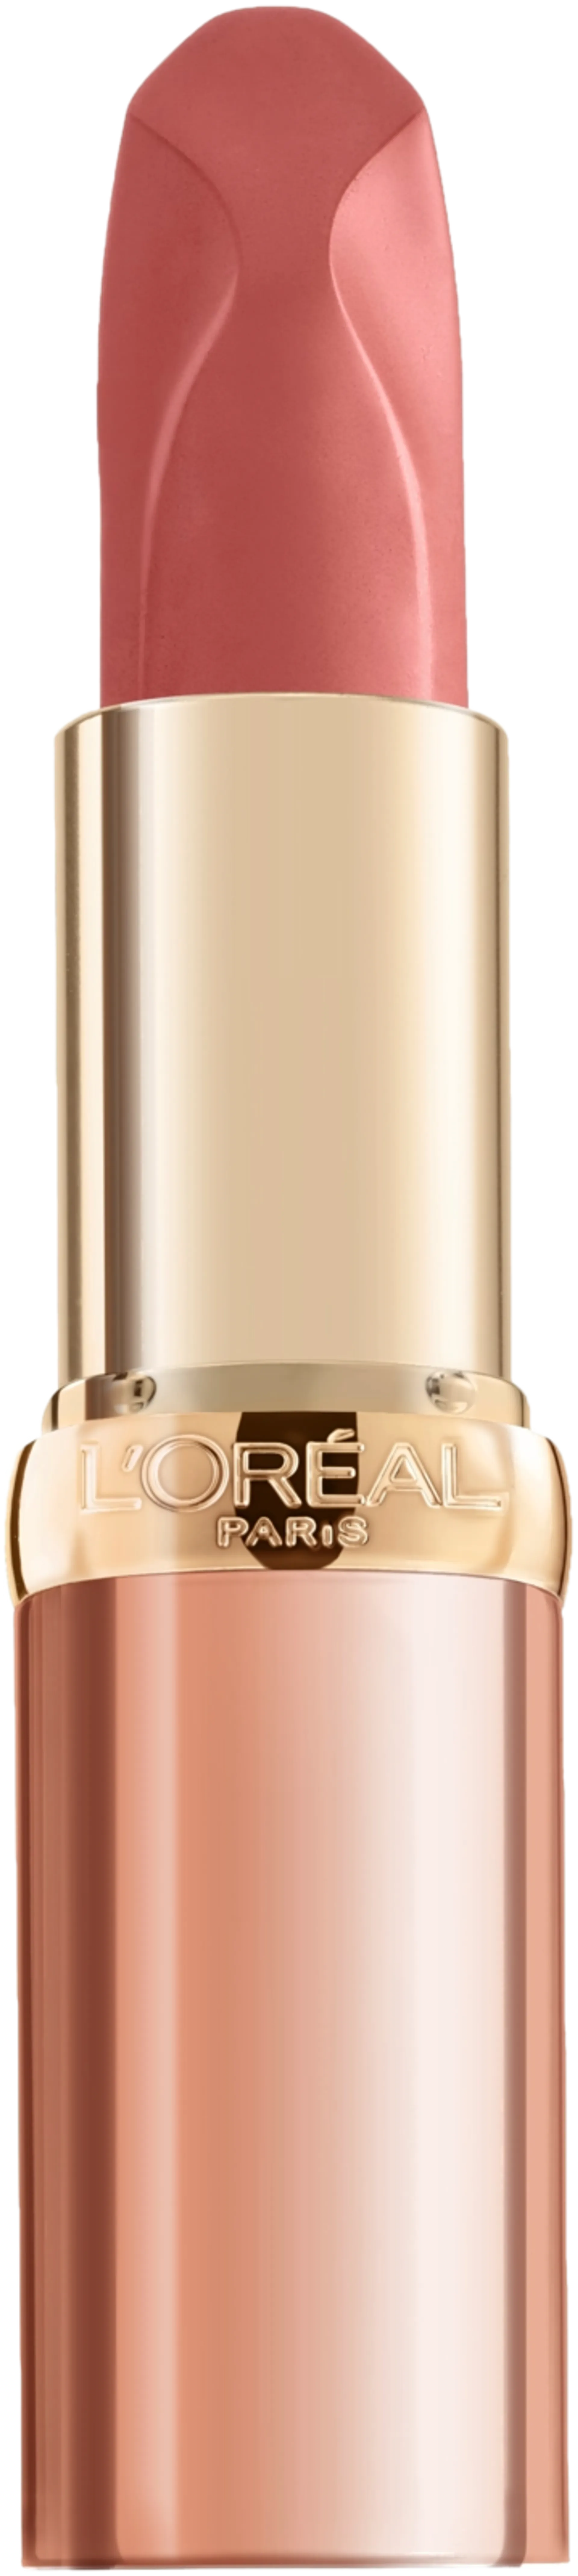 L'Oréal Paris Color Riche Nudes Insolent 173 Nu Impertanent -huulipuna 4,5 g - 1